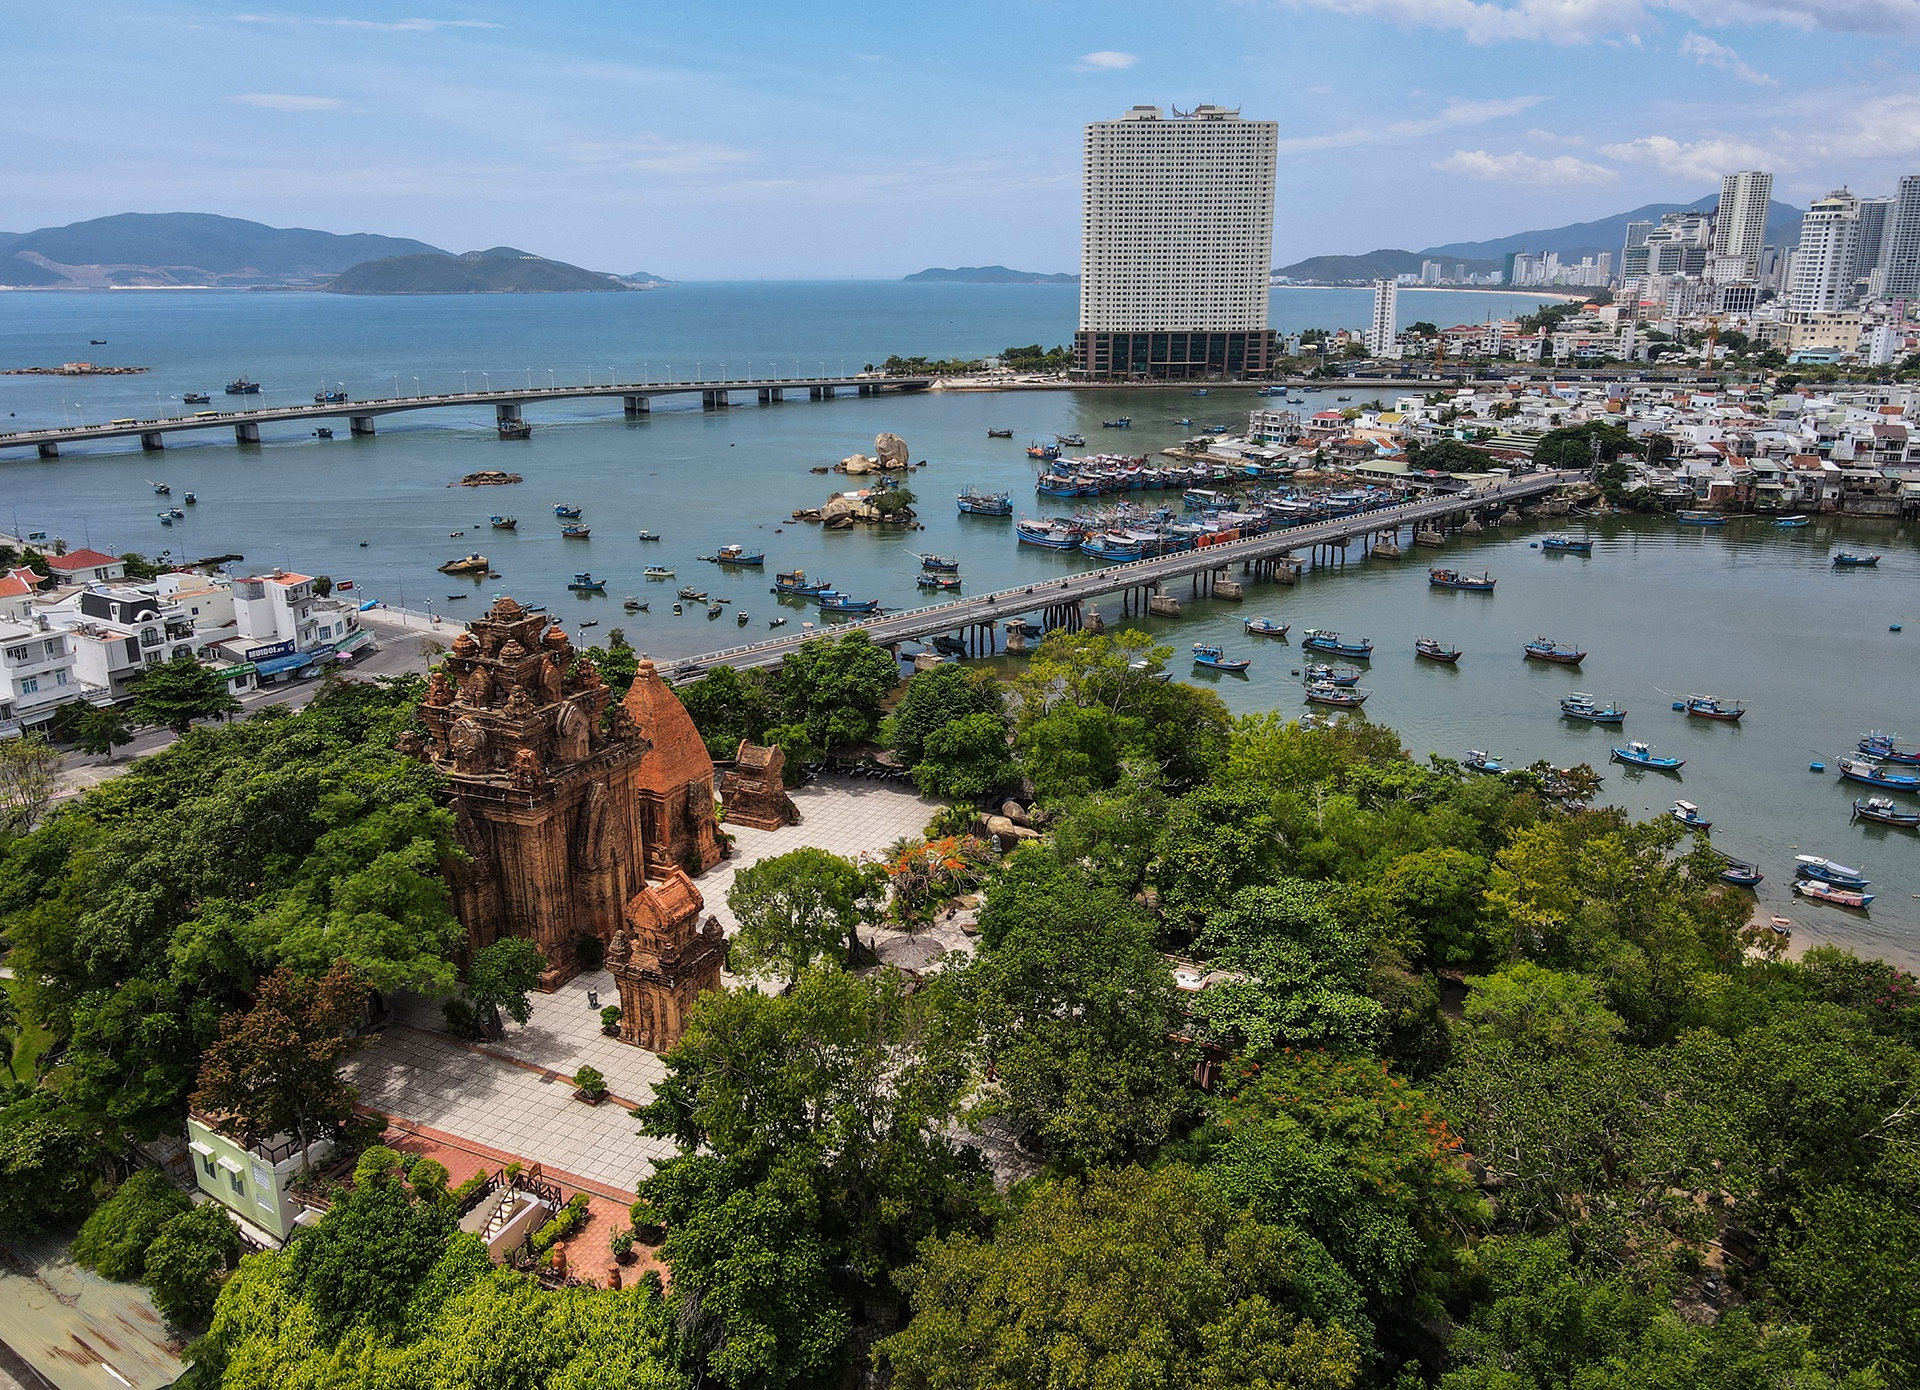 Bãi biển, danh thắng ở Nha Trang nhìn từ trên cao - Ảnh 7.